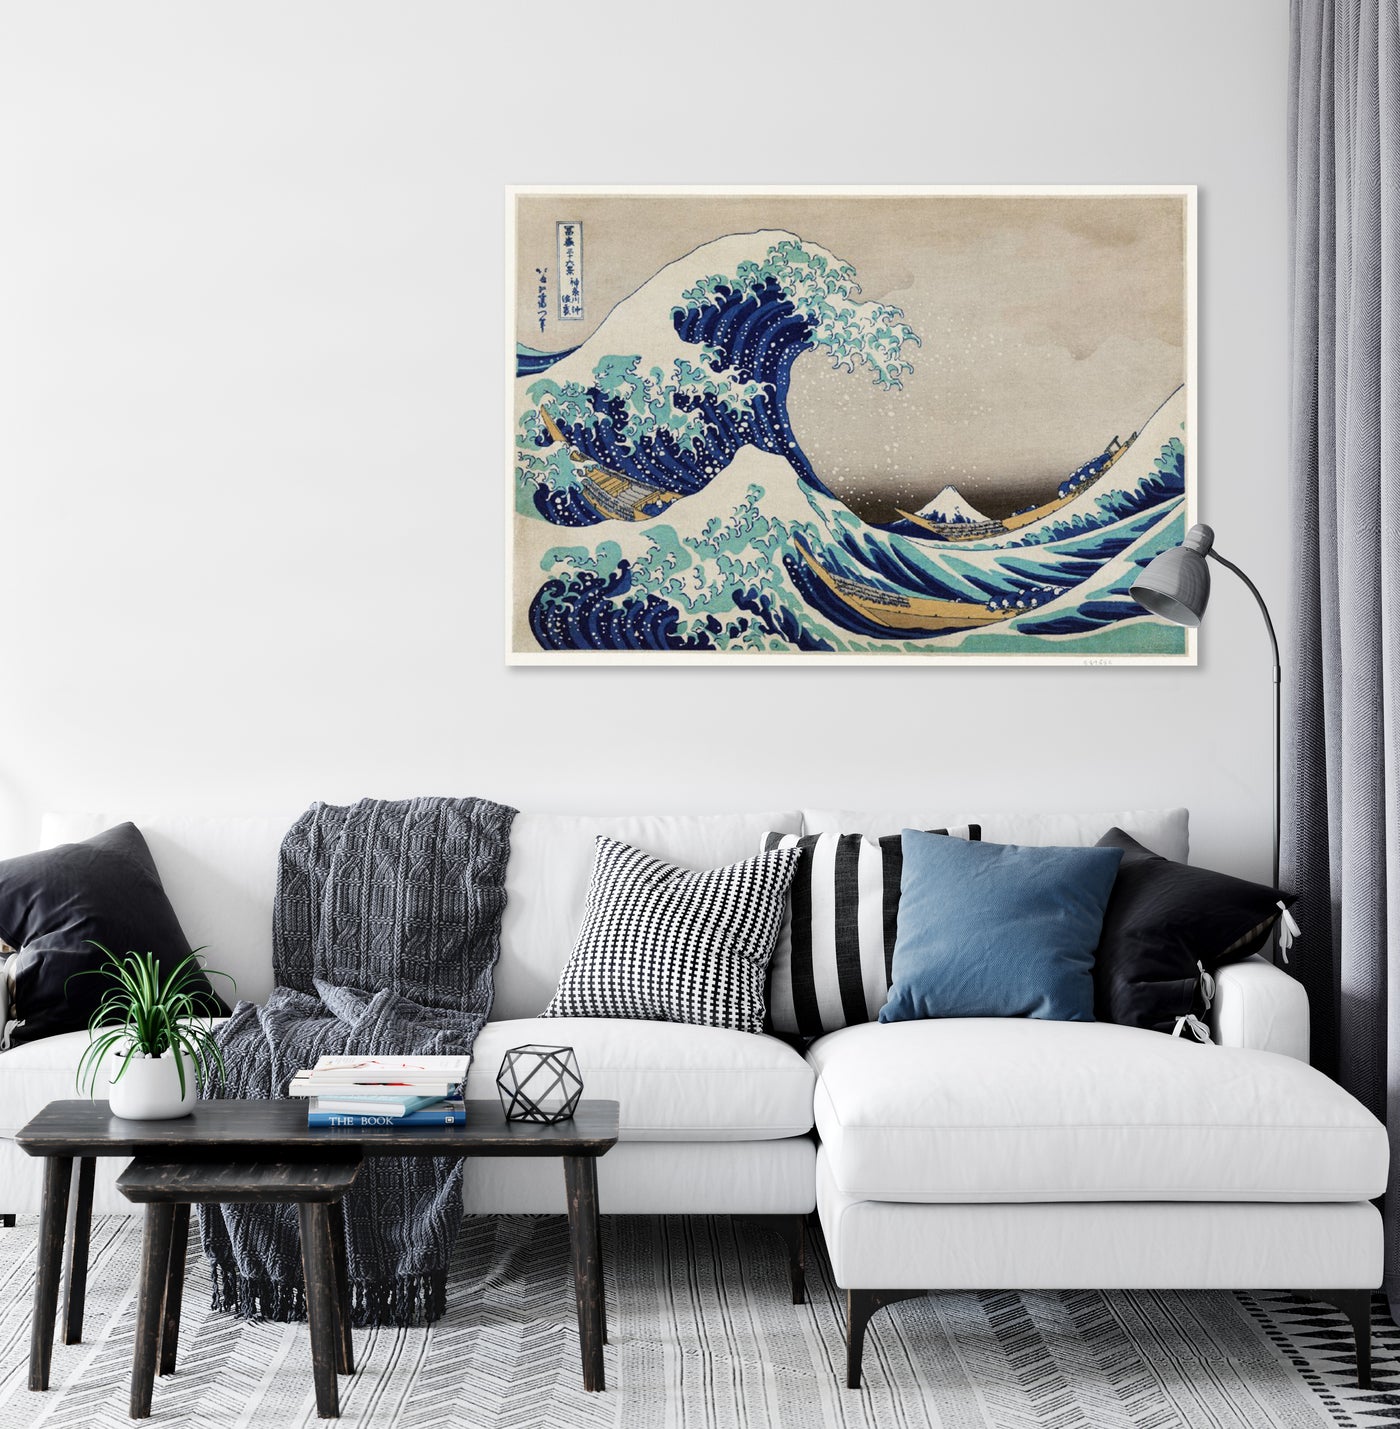 De grote golf van Kanagawa  - Katsushika Hokusai